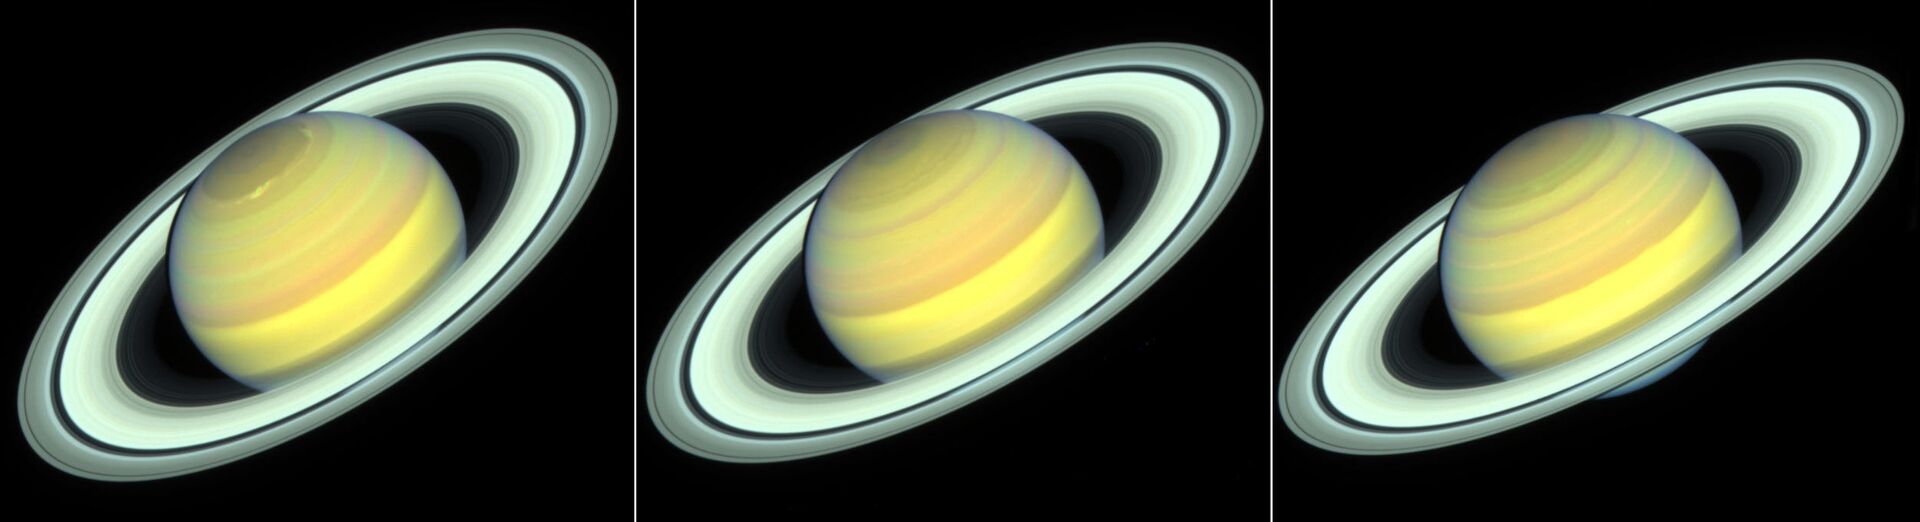 Saturno muda de cor conforme estações do ano passam, diz novo estudo com Hubble - Sputnik Brasil, 1920, 20.03.2021